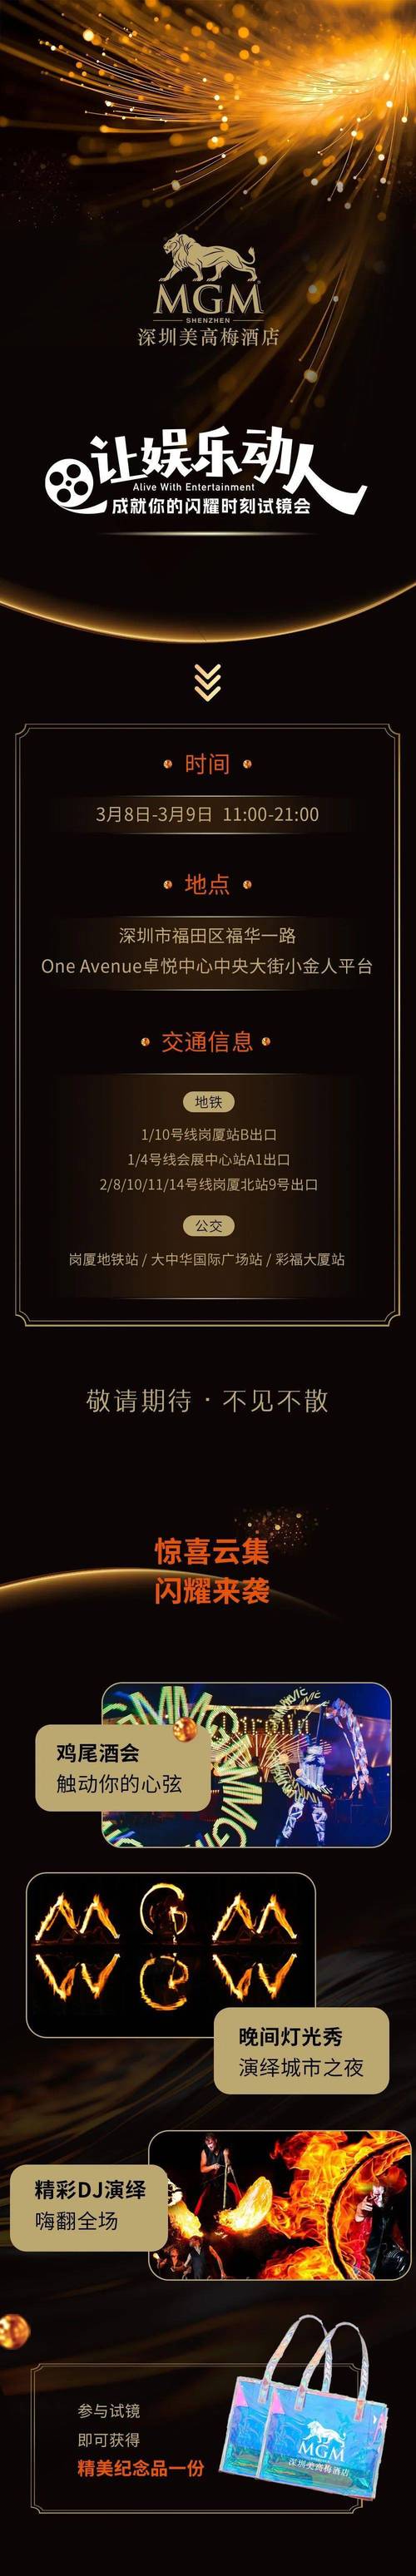 正规美高梅app官方登录,美高梅官方游戏网安卓版